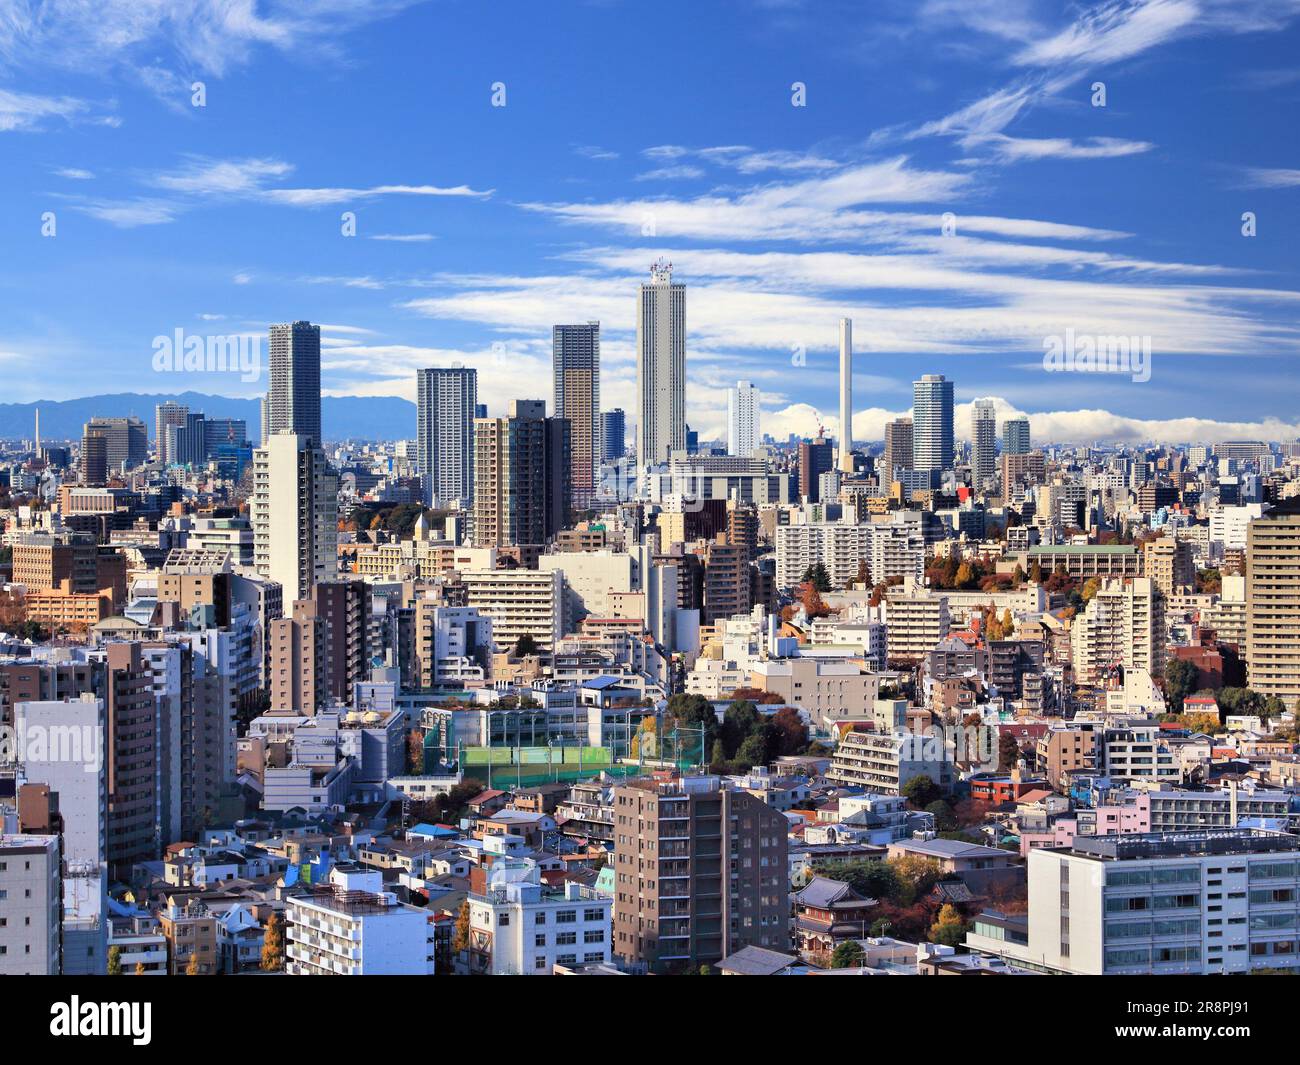 Blick auf die Stadt Tokio mit dem Stadtteil Koishikawa (Bunkyo ward) und der Skyline von Ikebukuro (Toshima ward). Tokio, Japan. Stockfoto